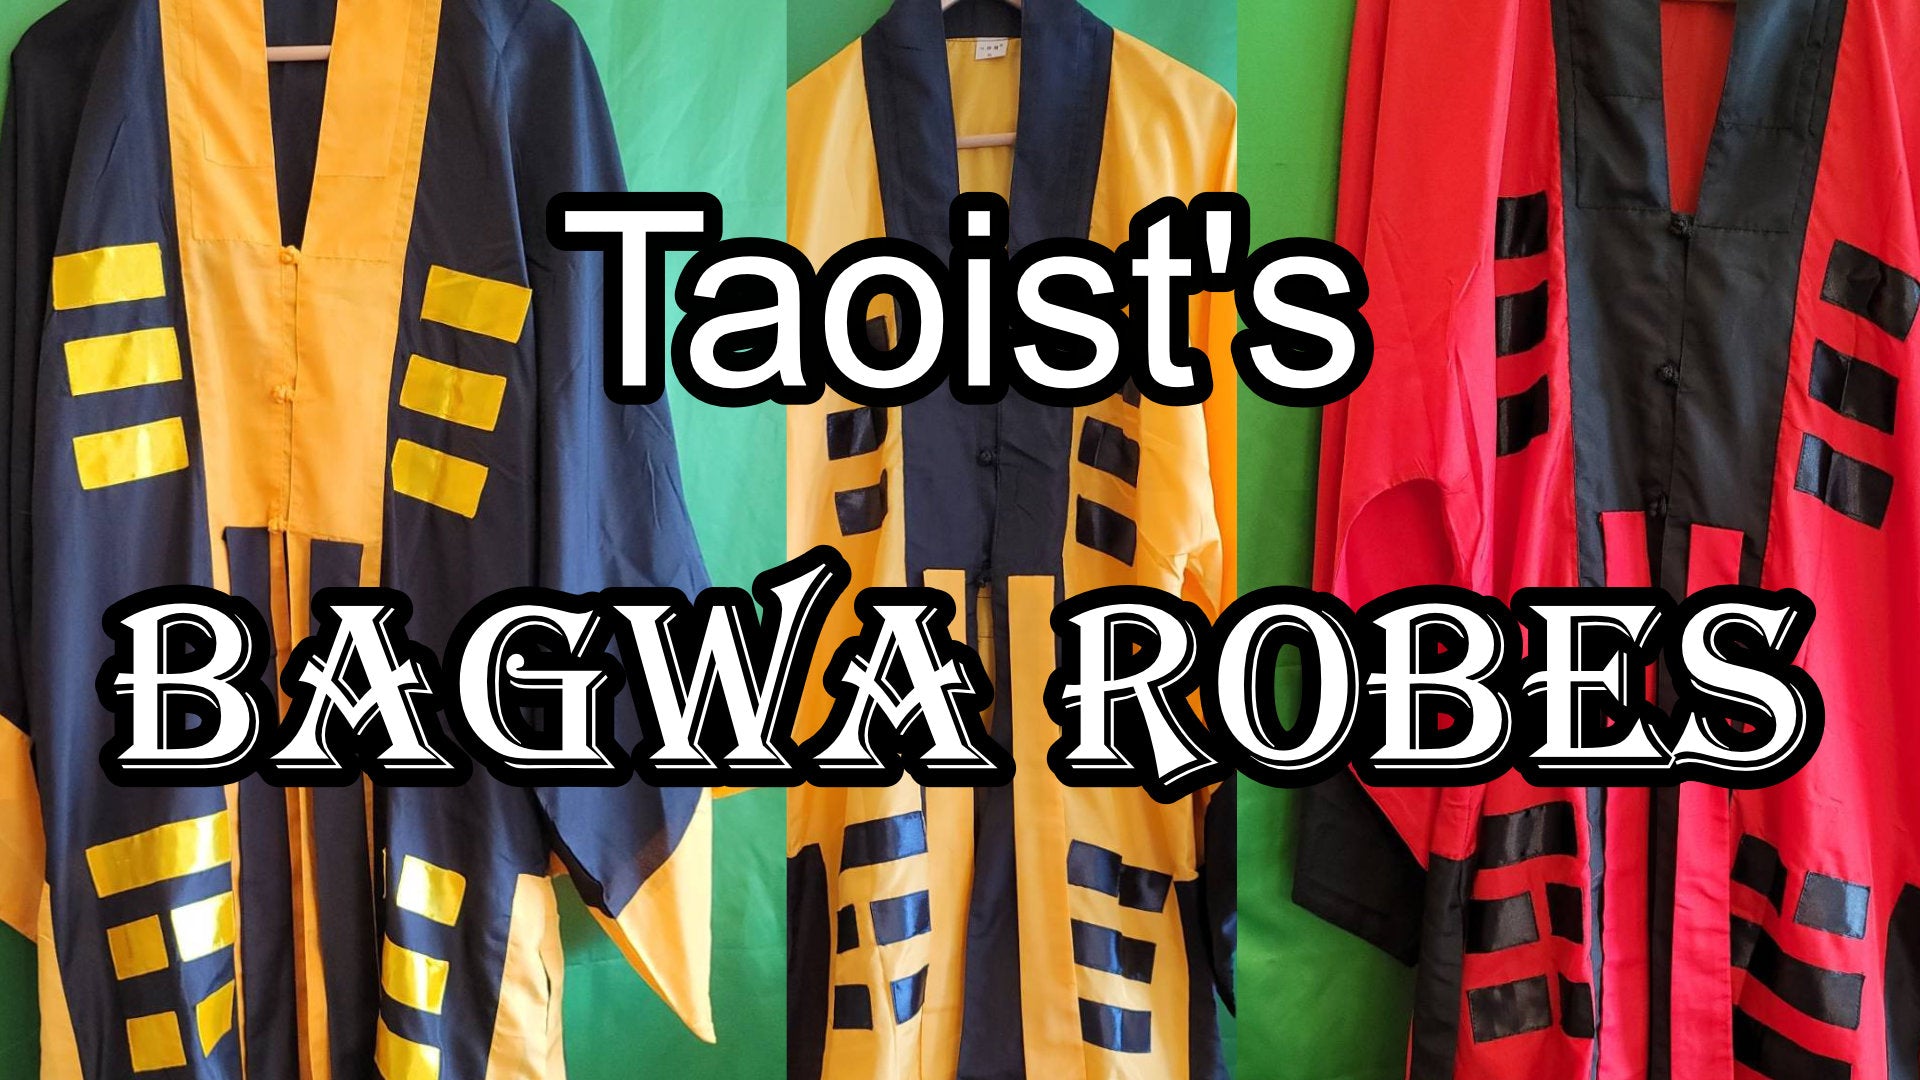 
          The Bagwa Taoist Robe Explained
        